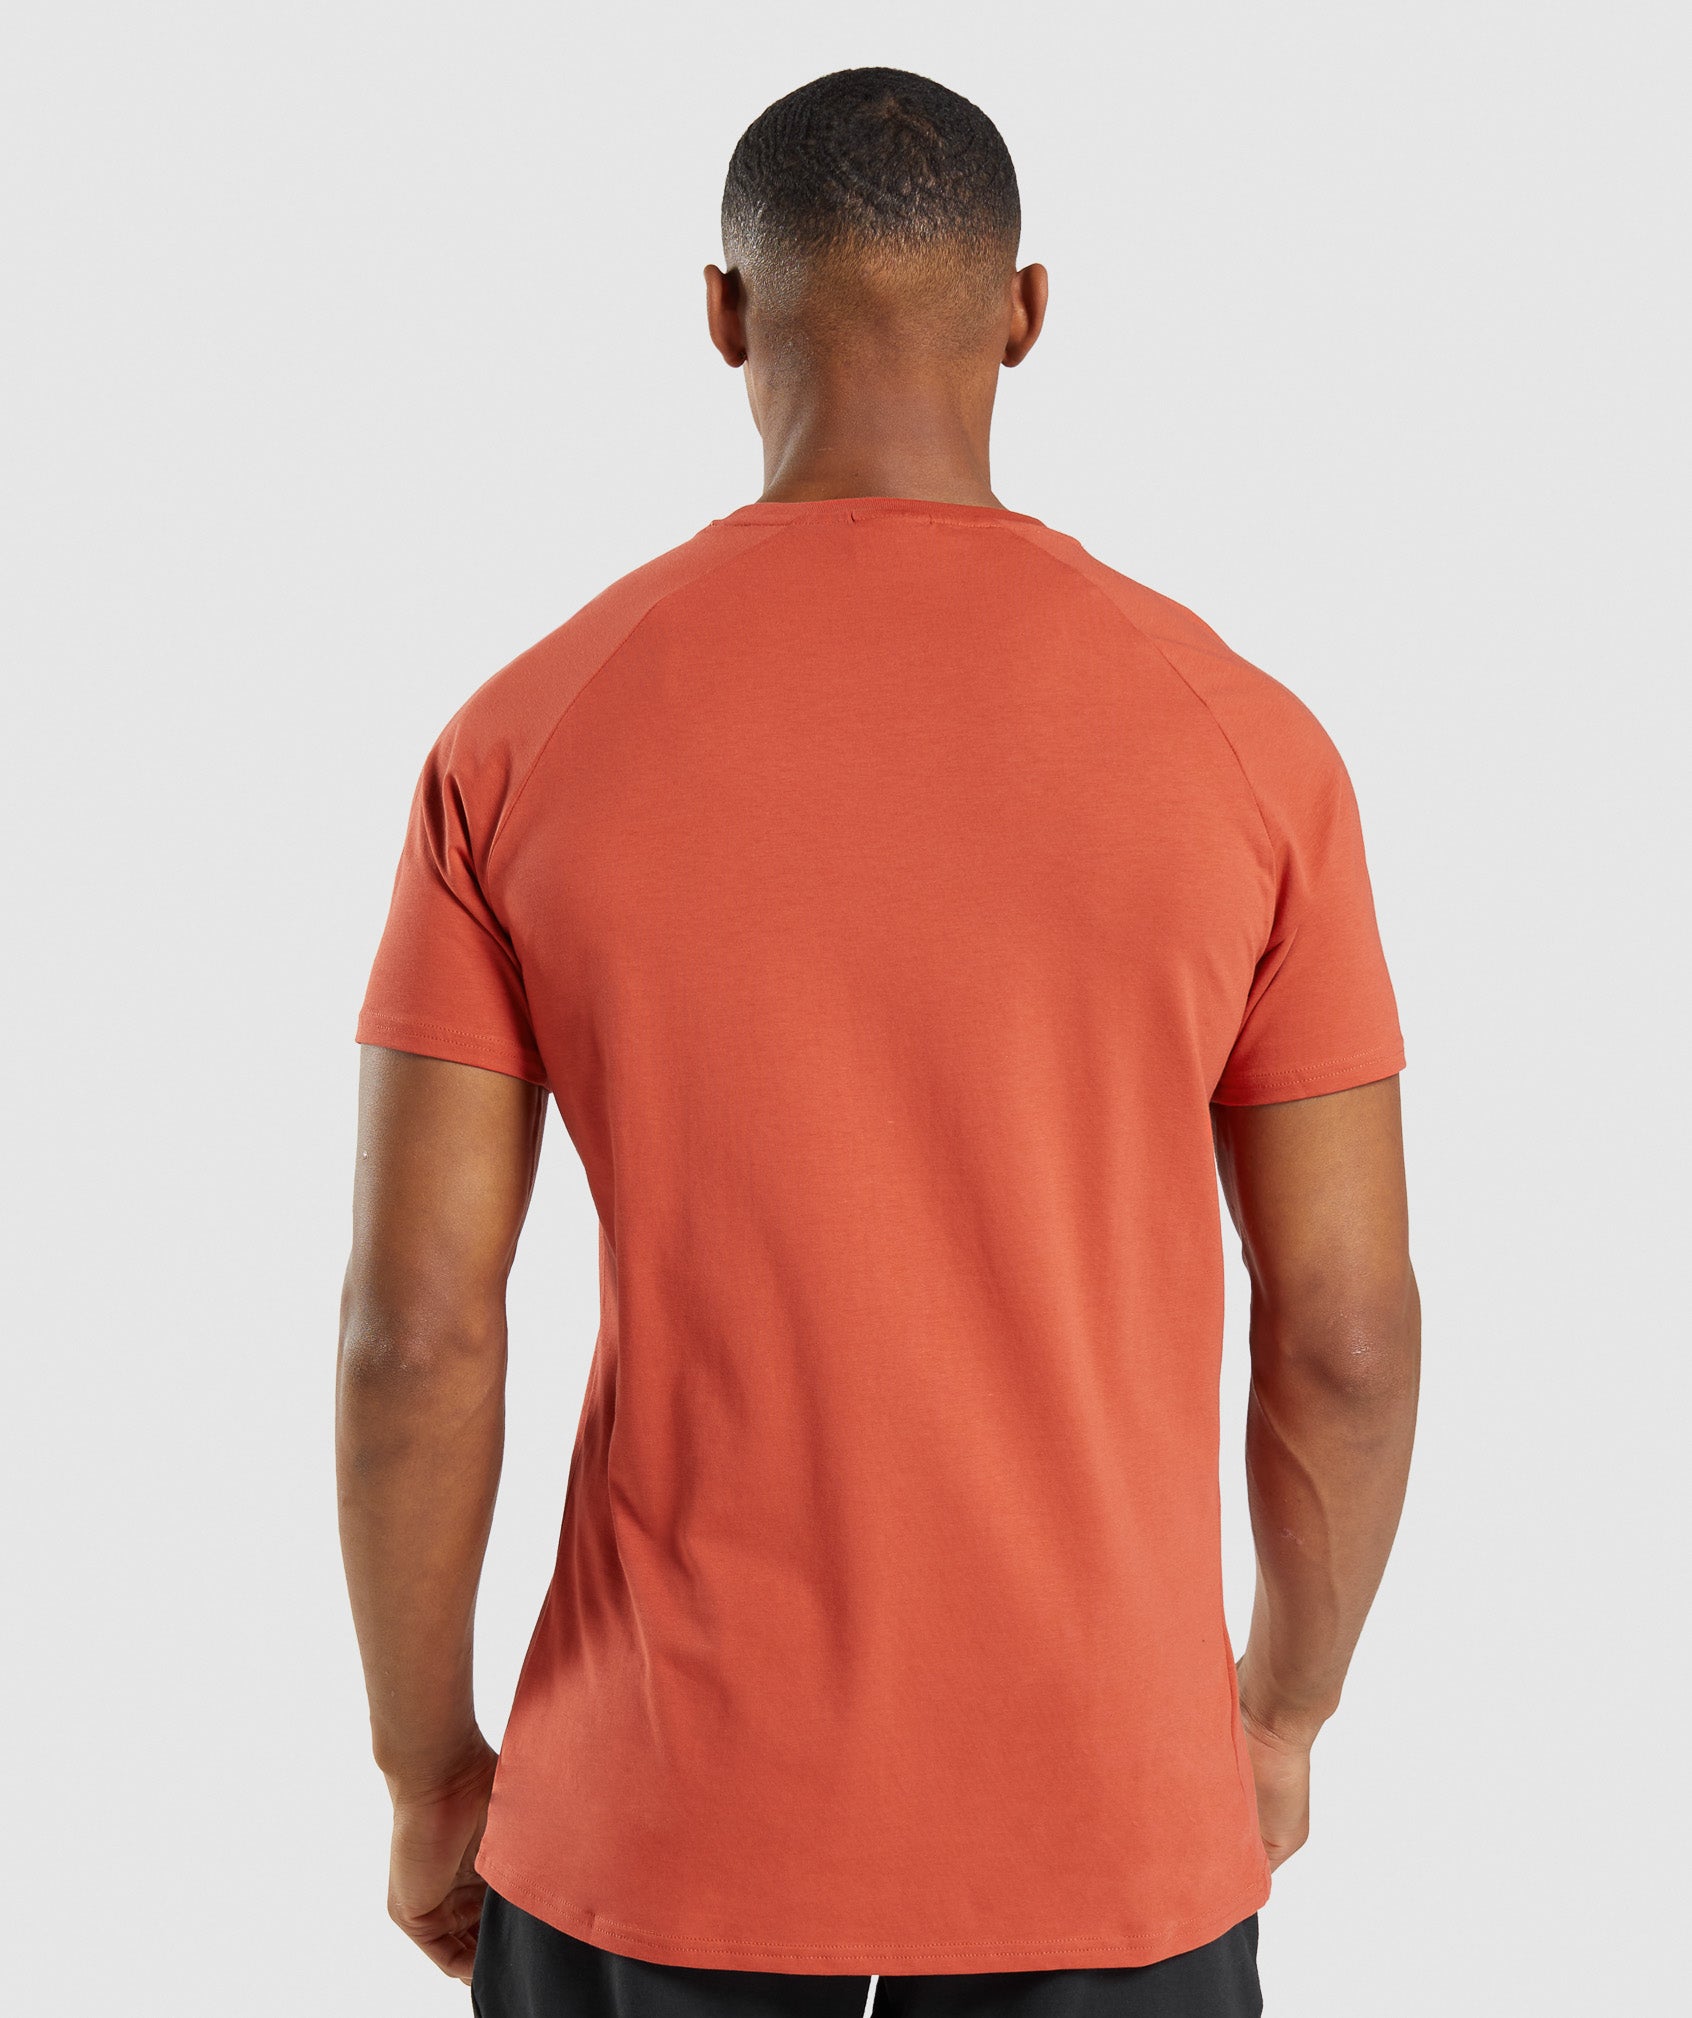 Apollo Camo T-Shirt in Blazer Red - view 2